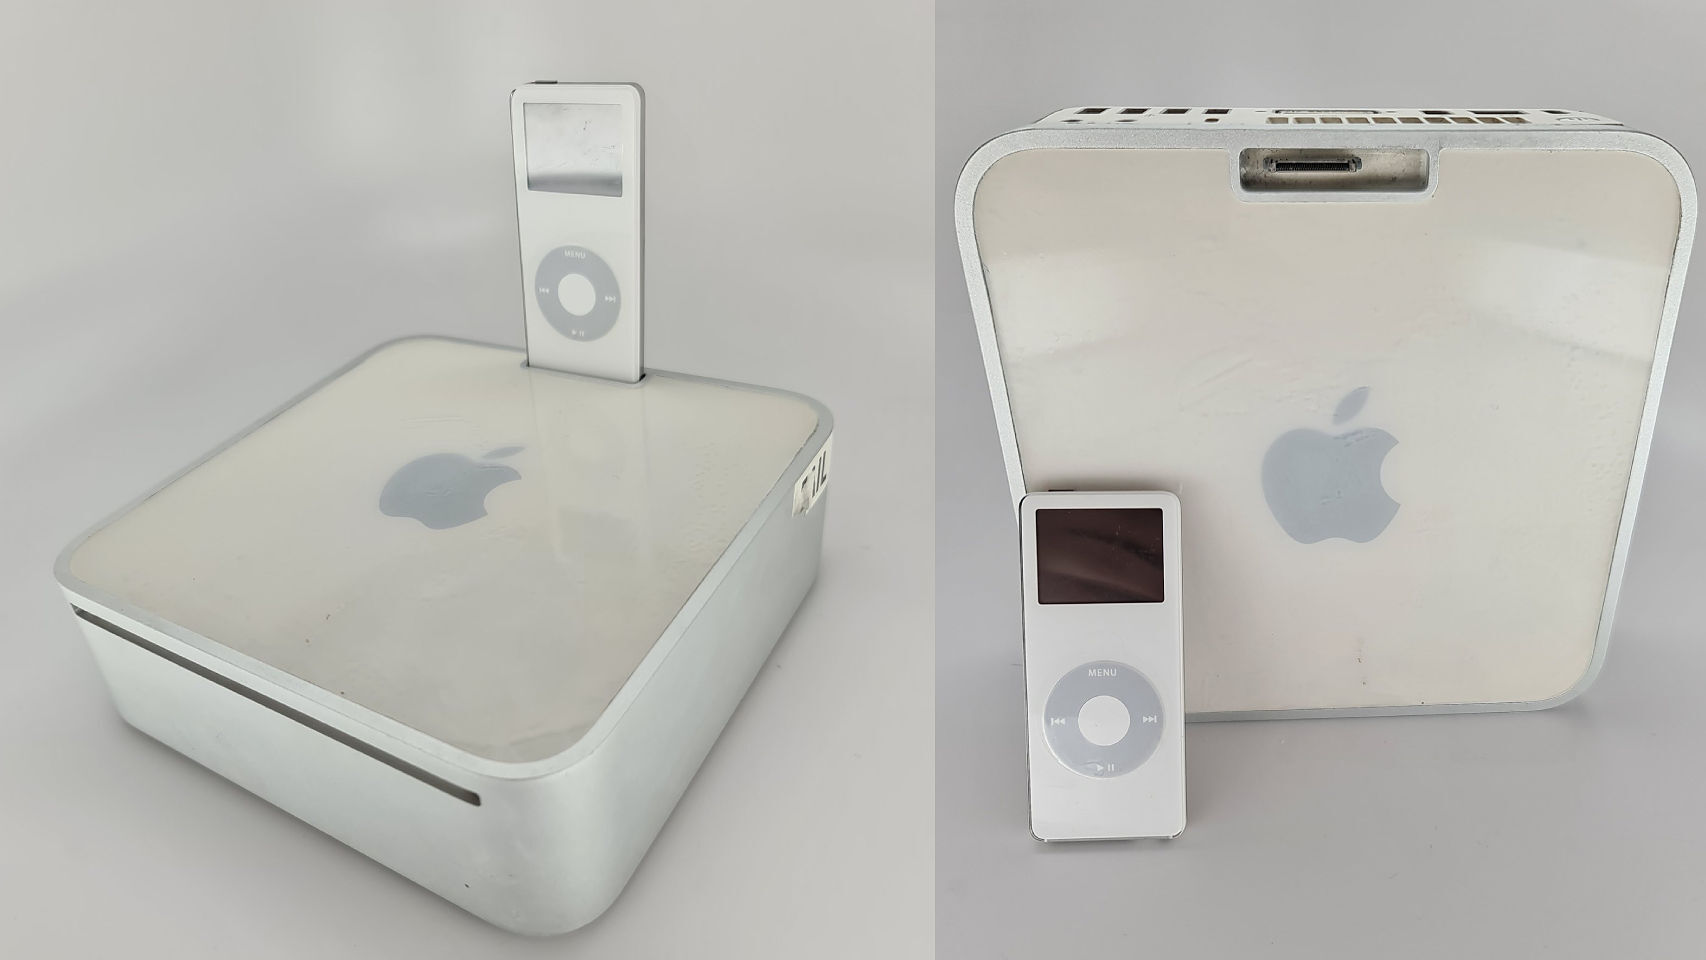 Prototipo de Mac Mini con una base para iPod.